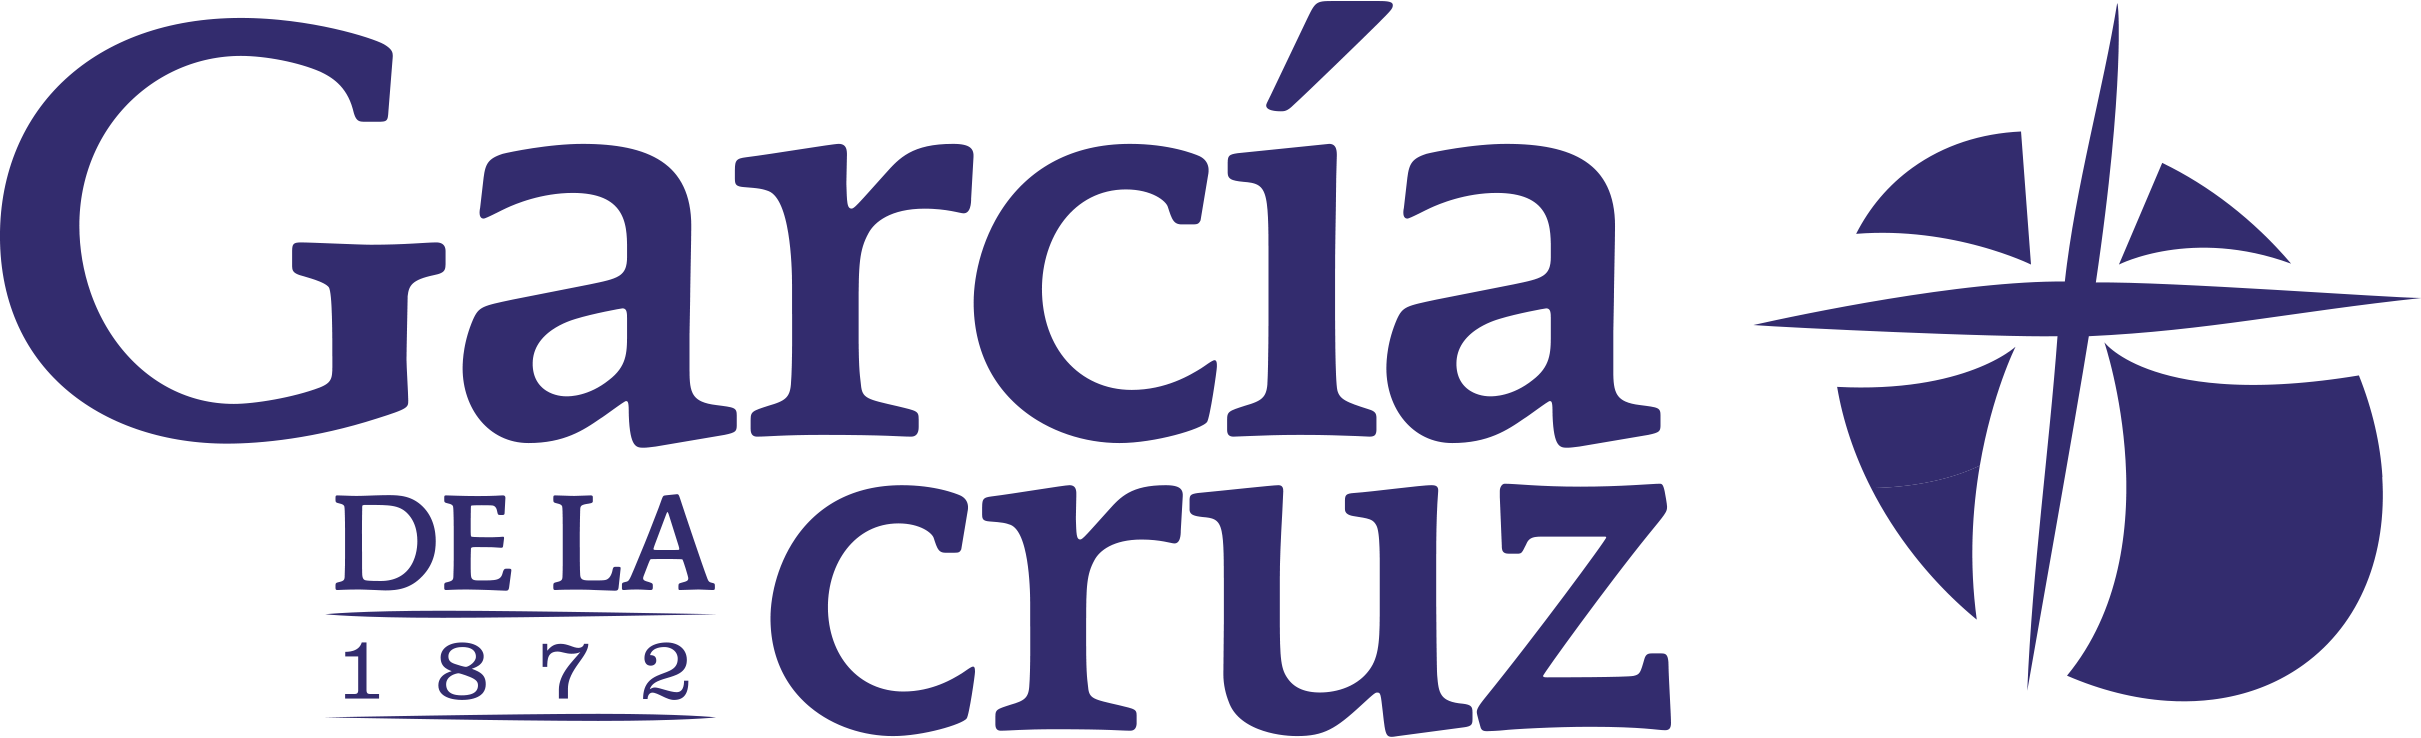 Масло garcia de la cruz. Garcia Cruz оливковое масло. Логотипы Garcia. Garcia de la Cruz масло оливковое. Де ла Круз лого.